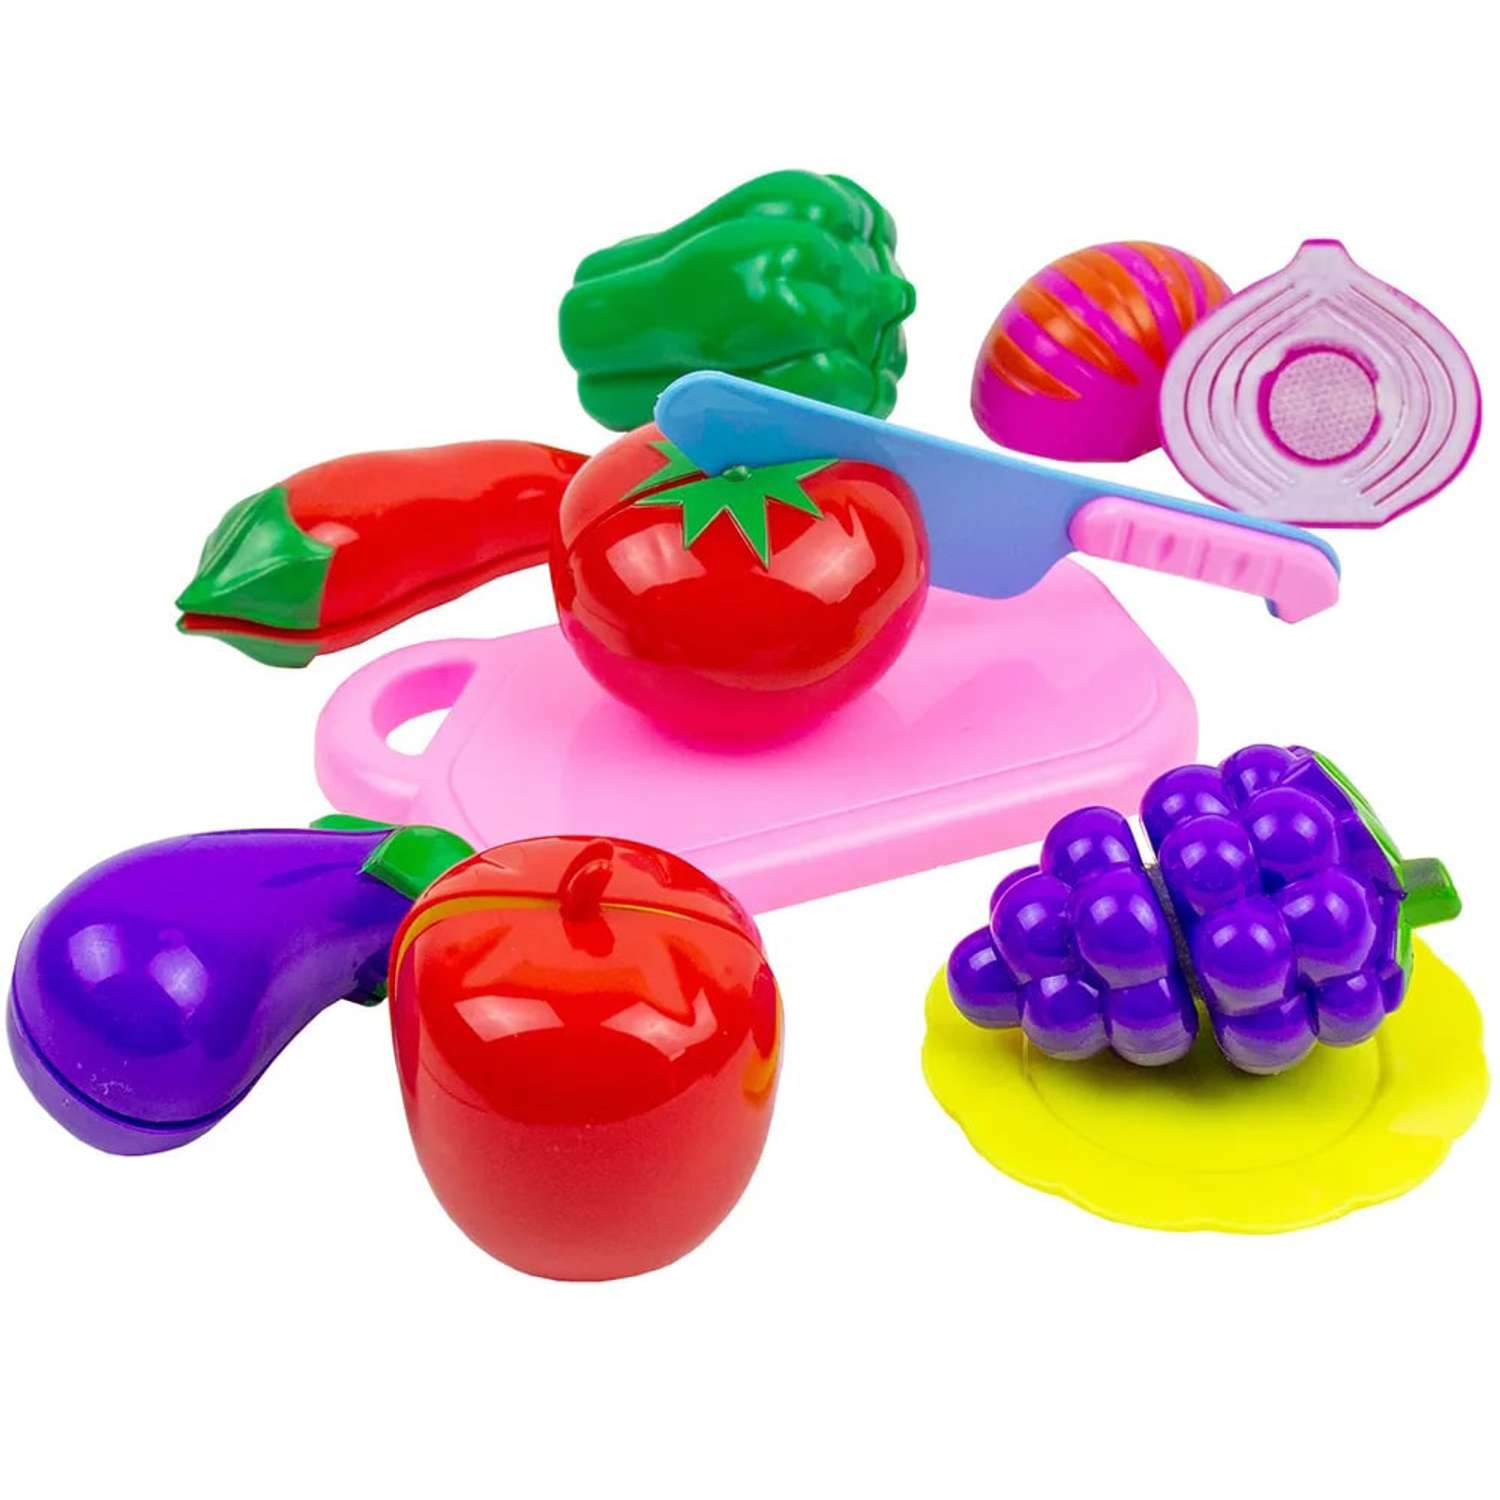 Детский игровой набор Story Game овощи и фрукты на липучке JJL002-3B - фото 1